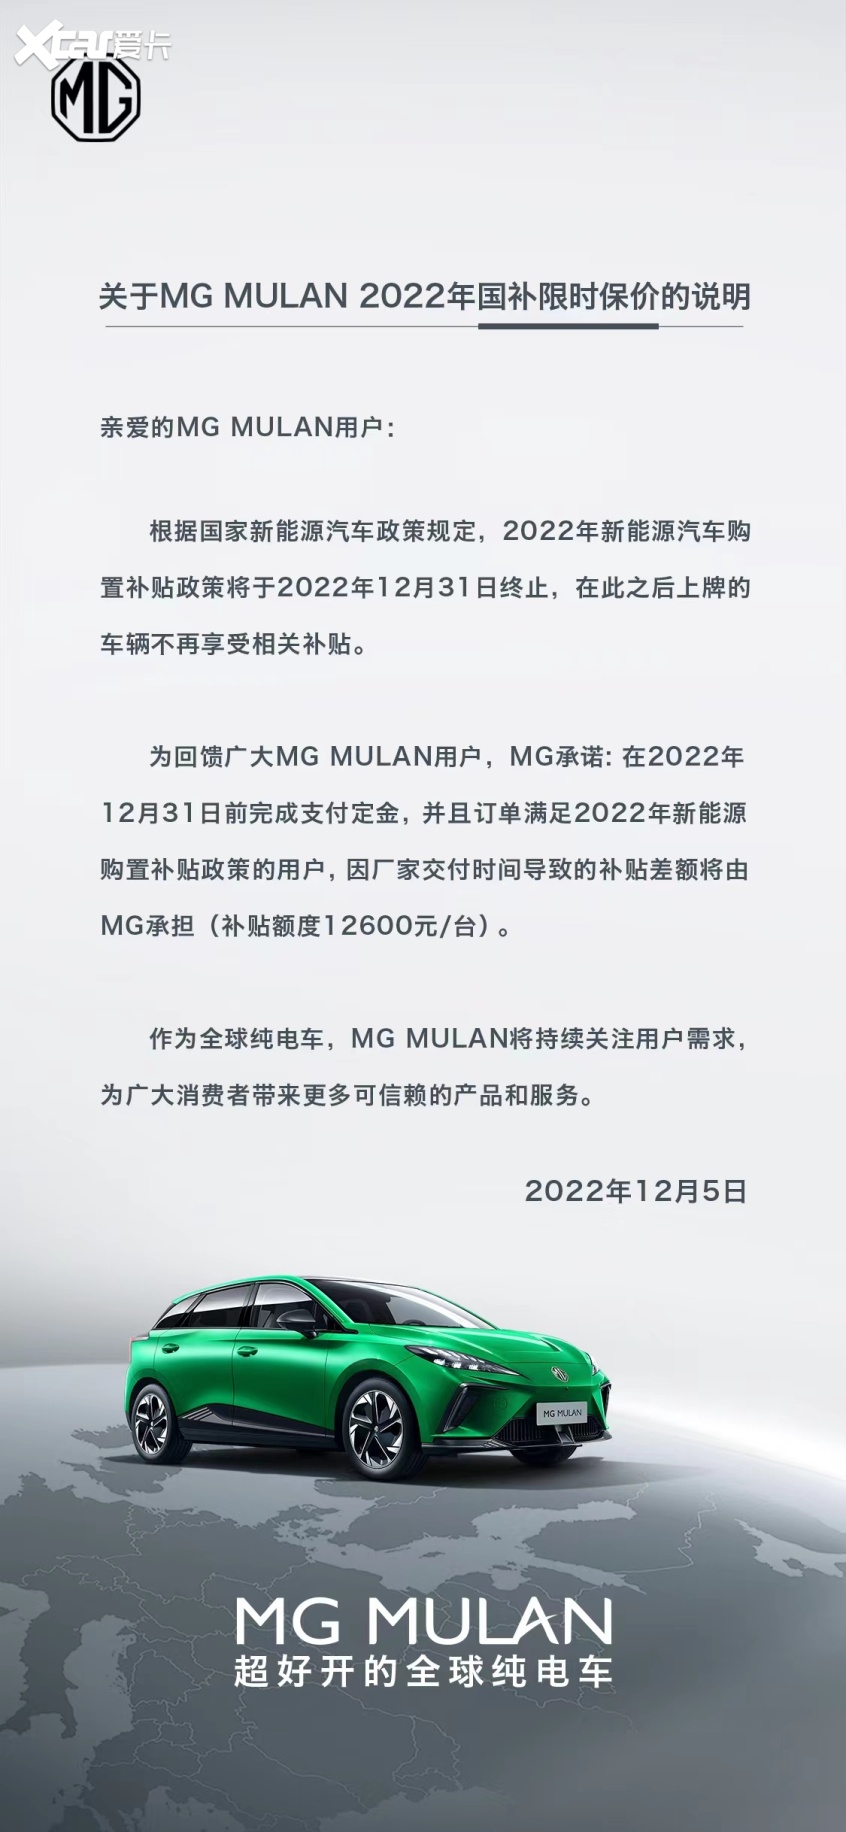 补贴1.26万/台 MG MULAN发布保价说明